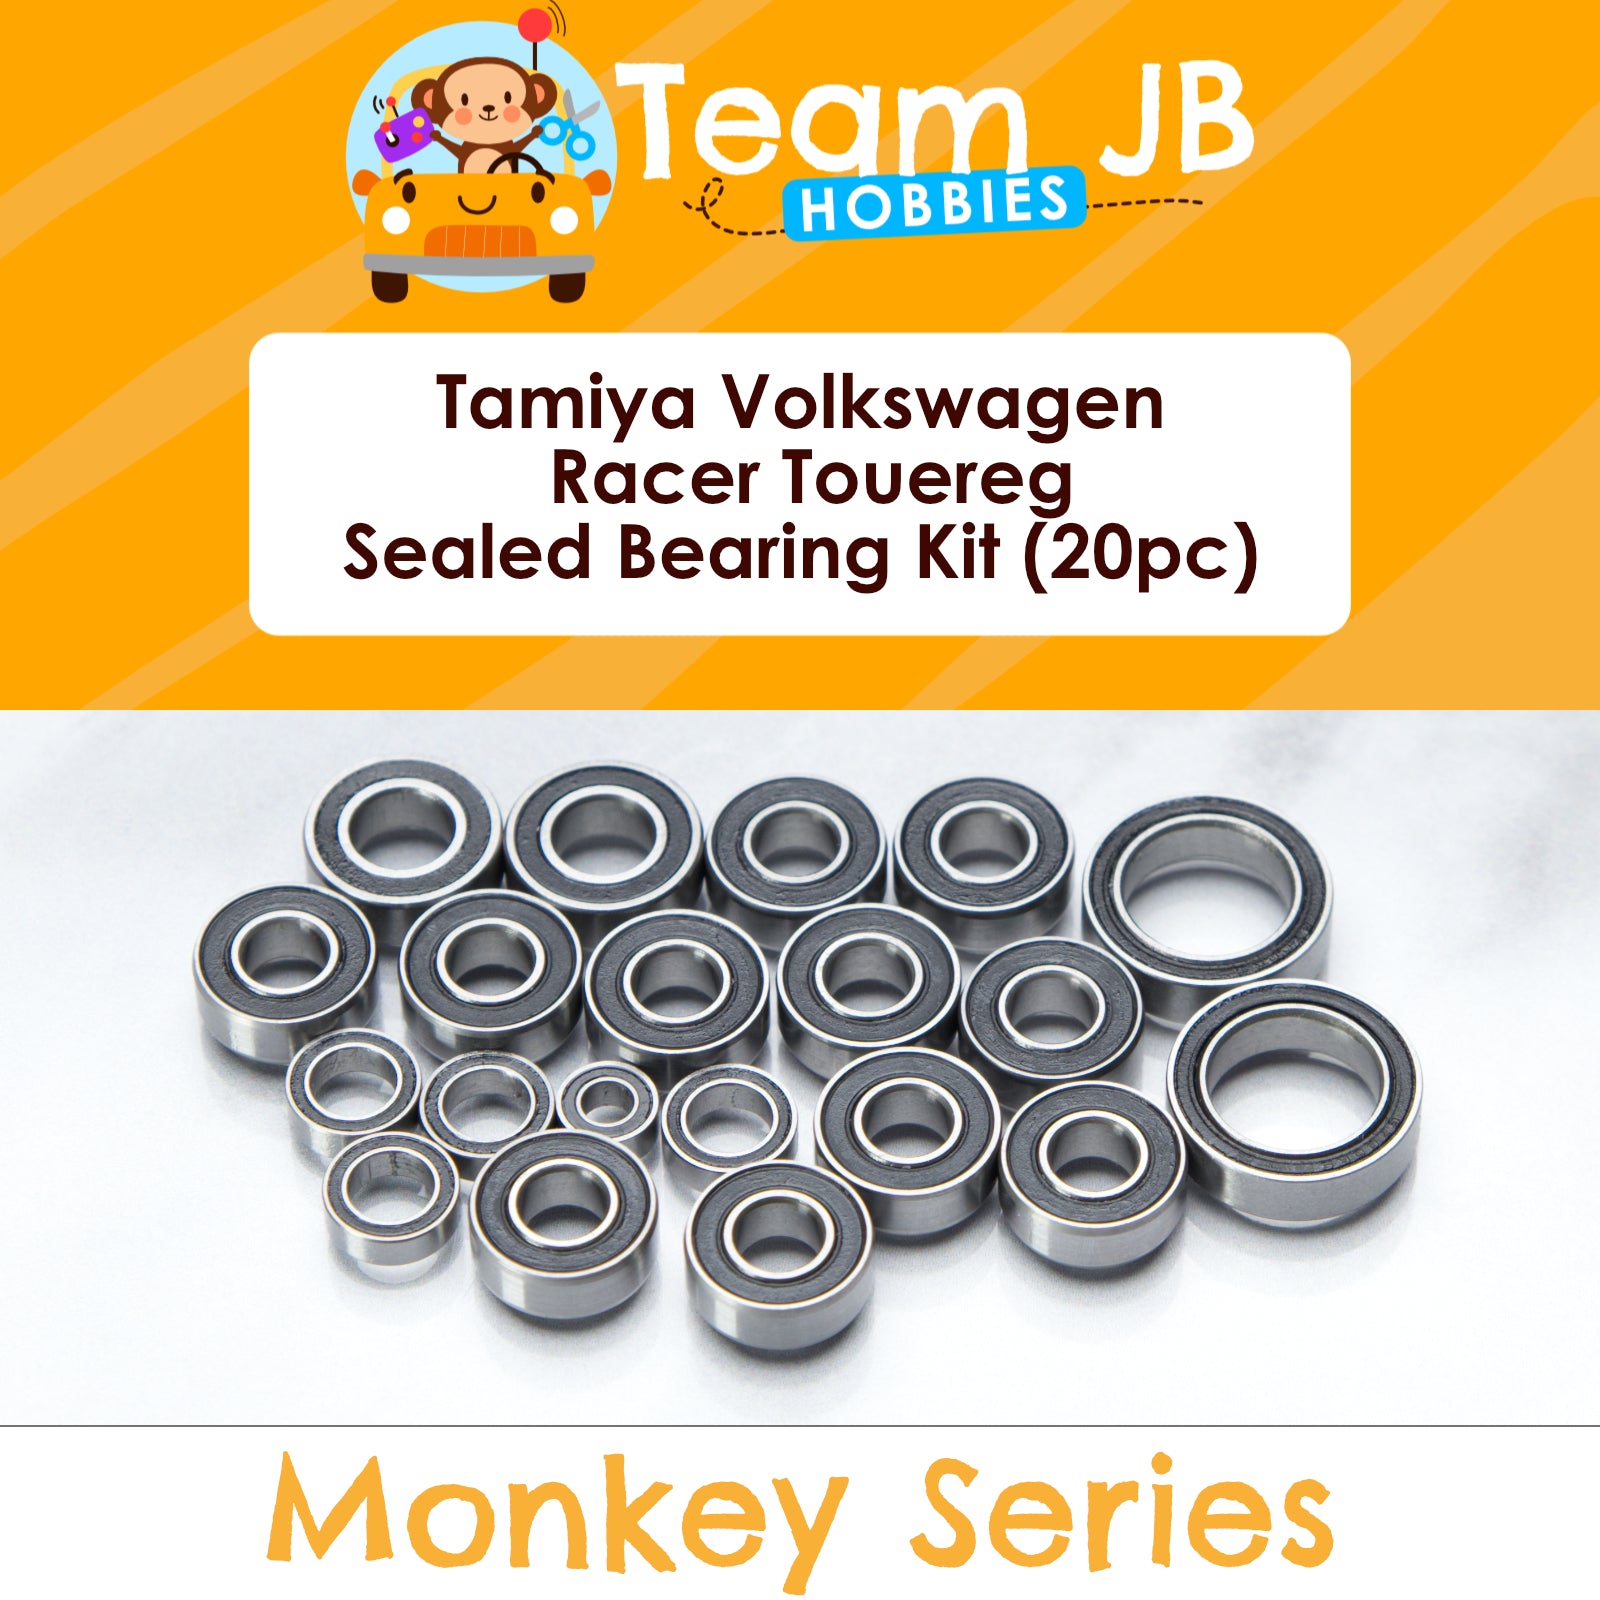 Tamiya Volkswagen Racer Touereg (CC-01)  - Sealed Bearing Kit